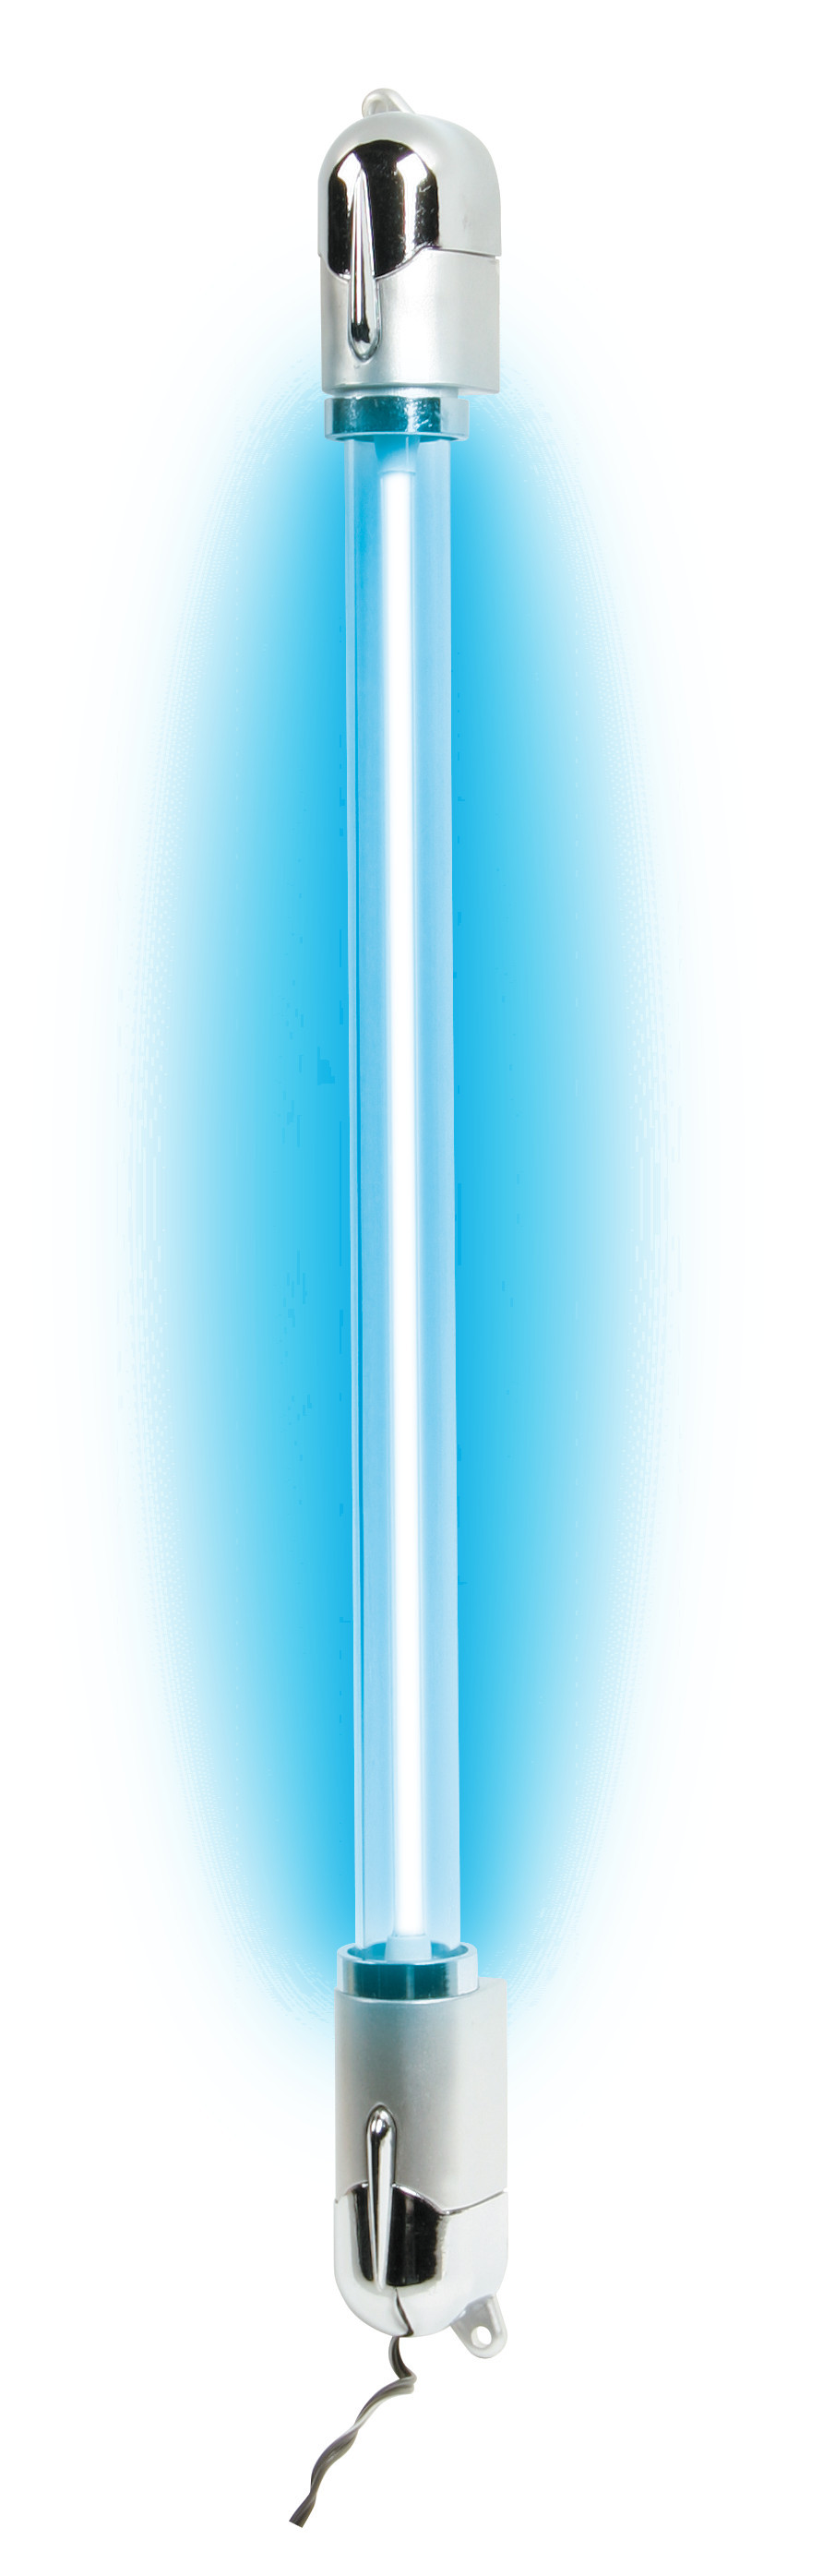 X-Eon színes neon 42cm 12V - Kék thumb